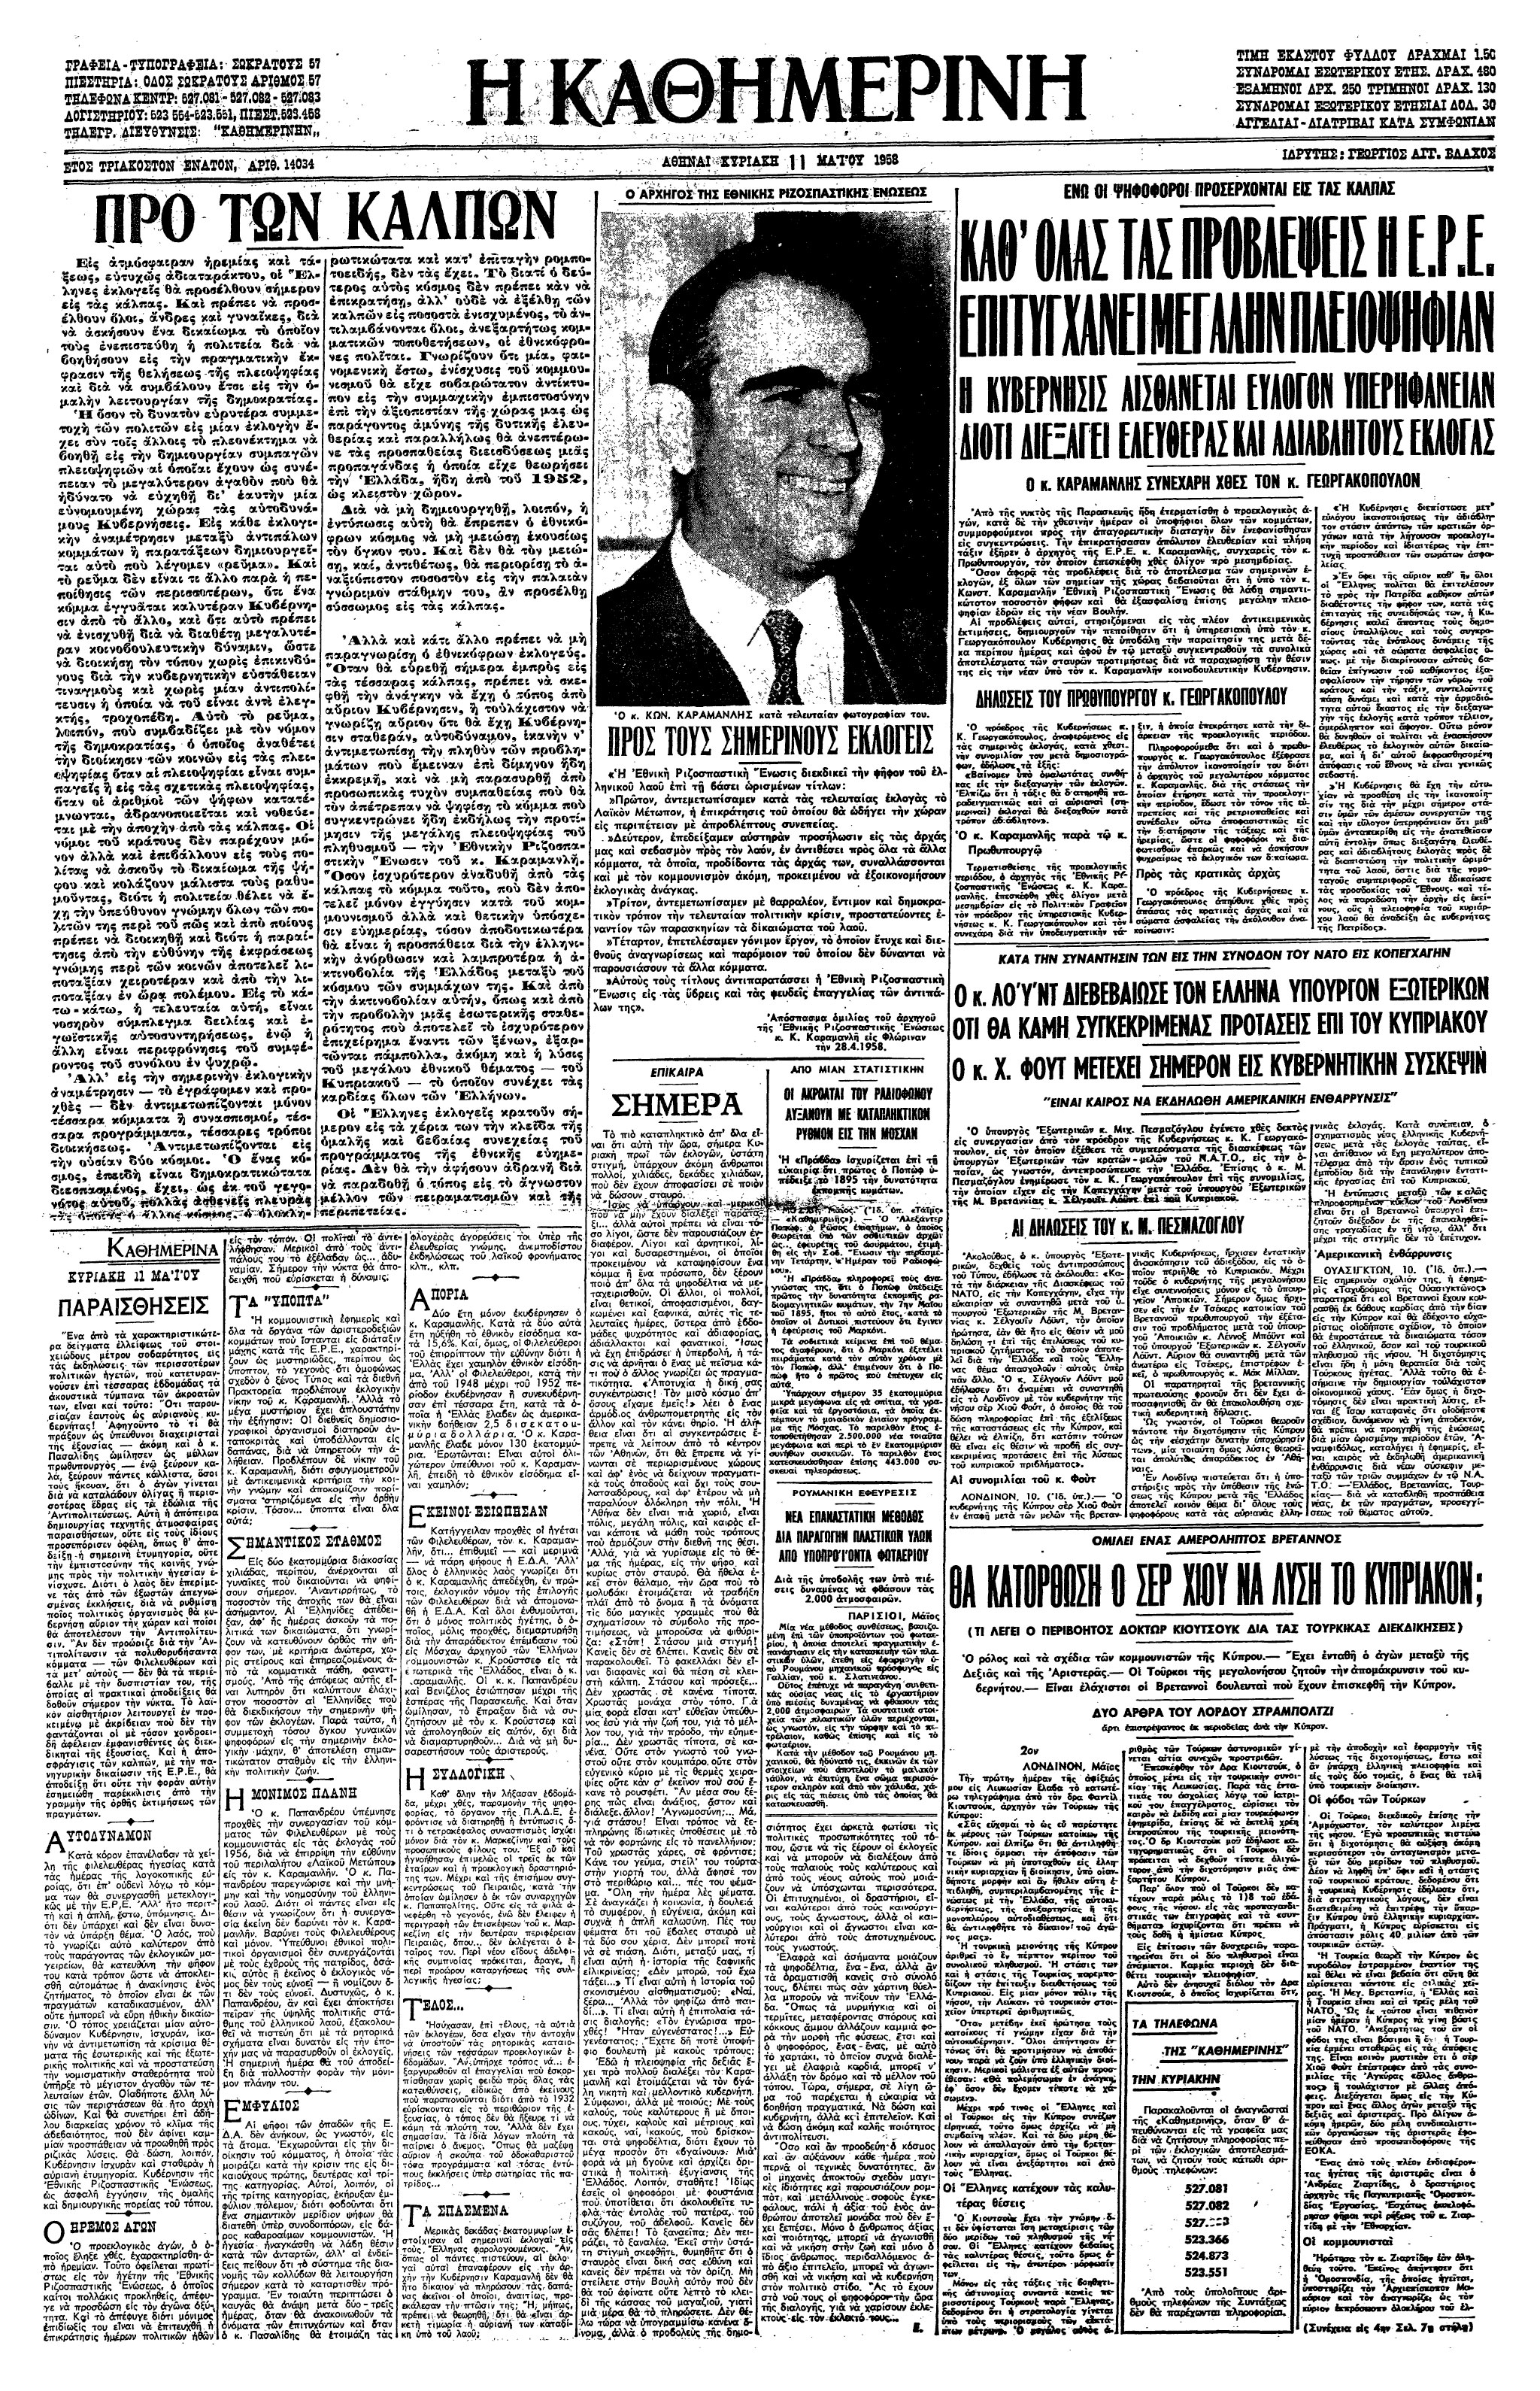 Σαν σήμερα: 11 Μαΐου 1958 – Νίκη της ΕΡΕ στις εκλογές-1